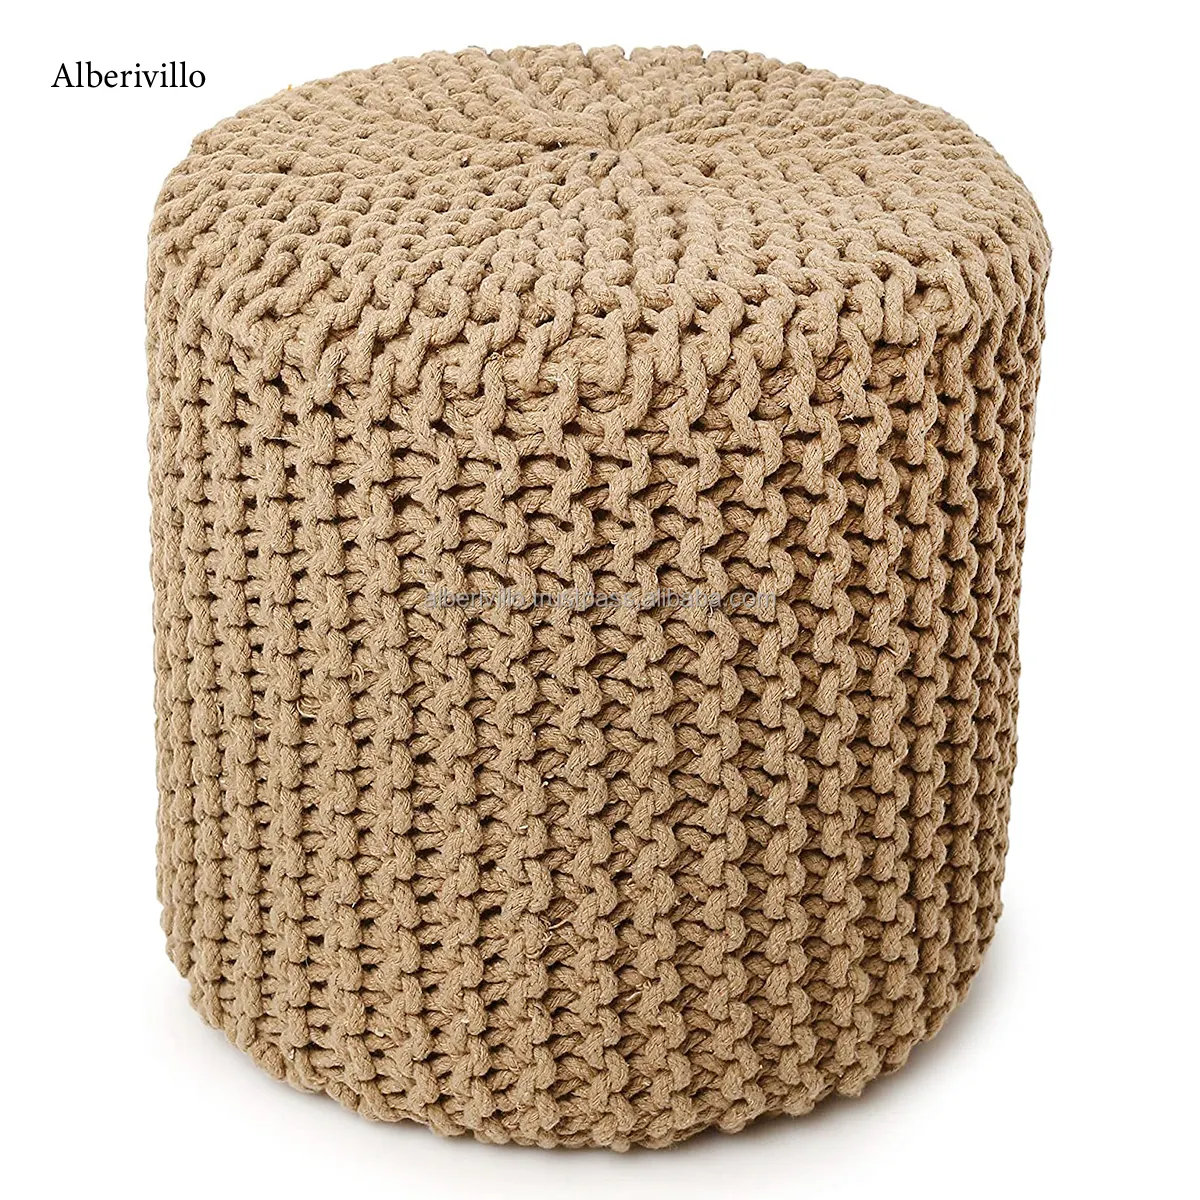 Cómodos muebles para el hogar Puf otomano hecho a mano Algodón Crochet Reposapiés Pufs Bone Inlay Console